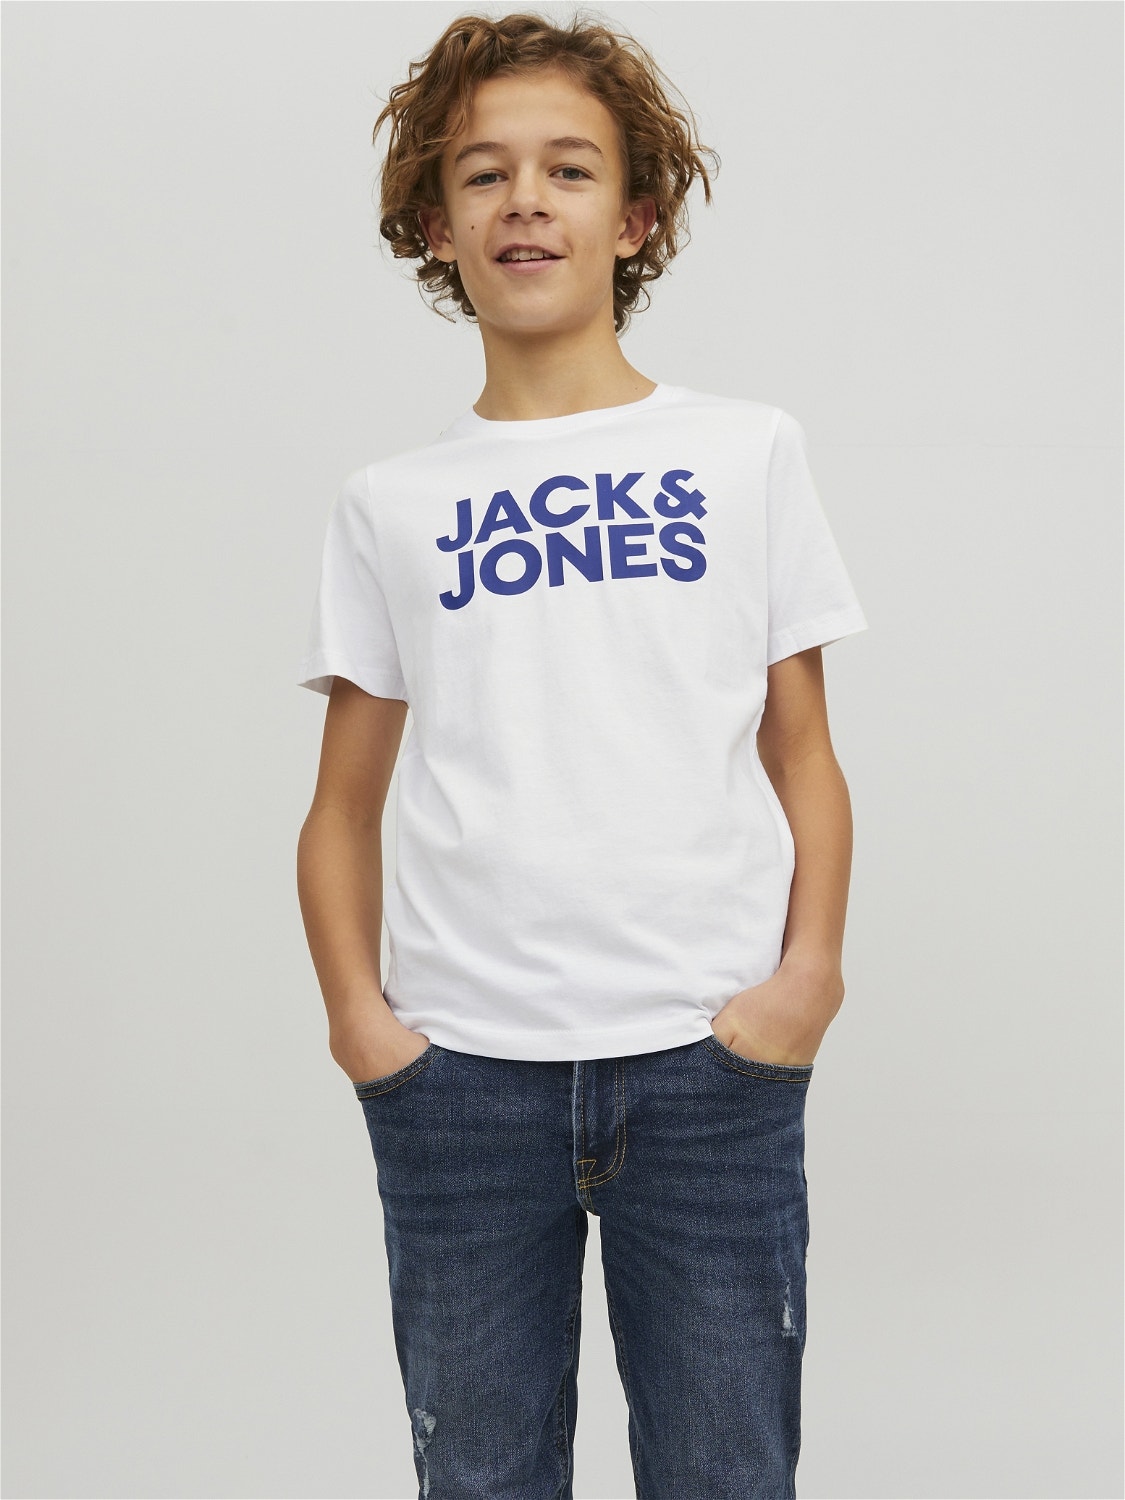 Jack & Jones 2-pakuotės Logotipas Marškinėliai For boys -Navy Blazer - 12199947